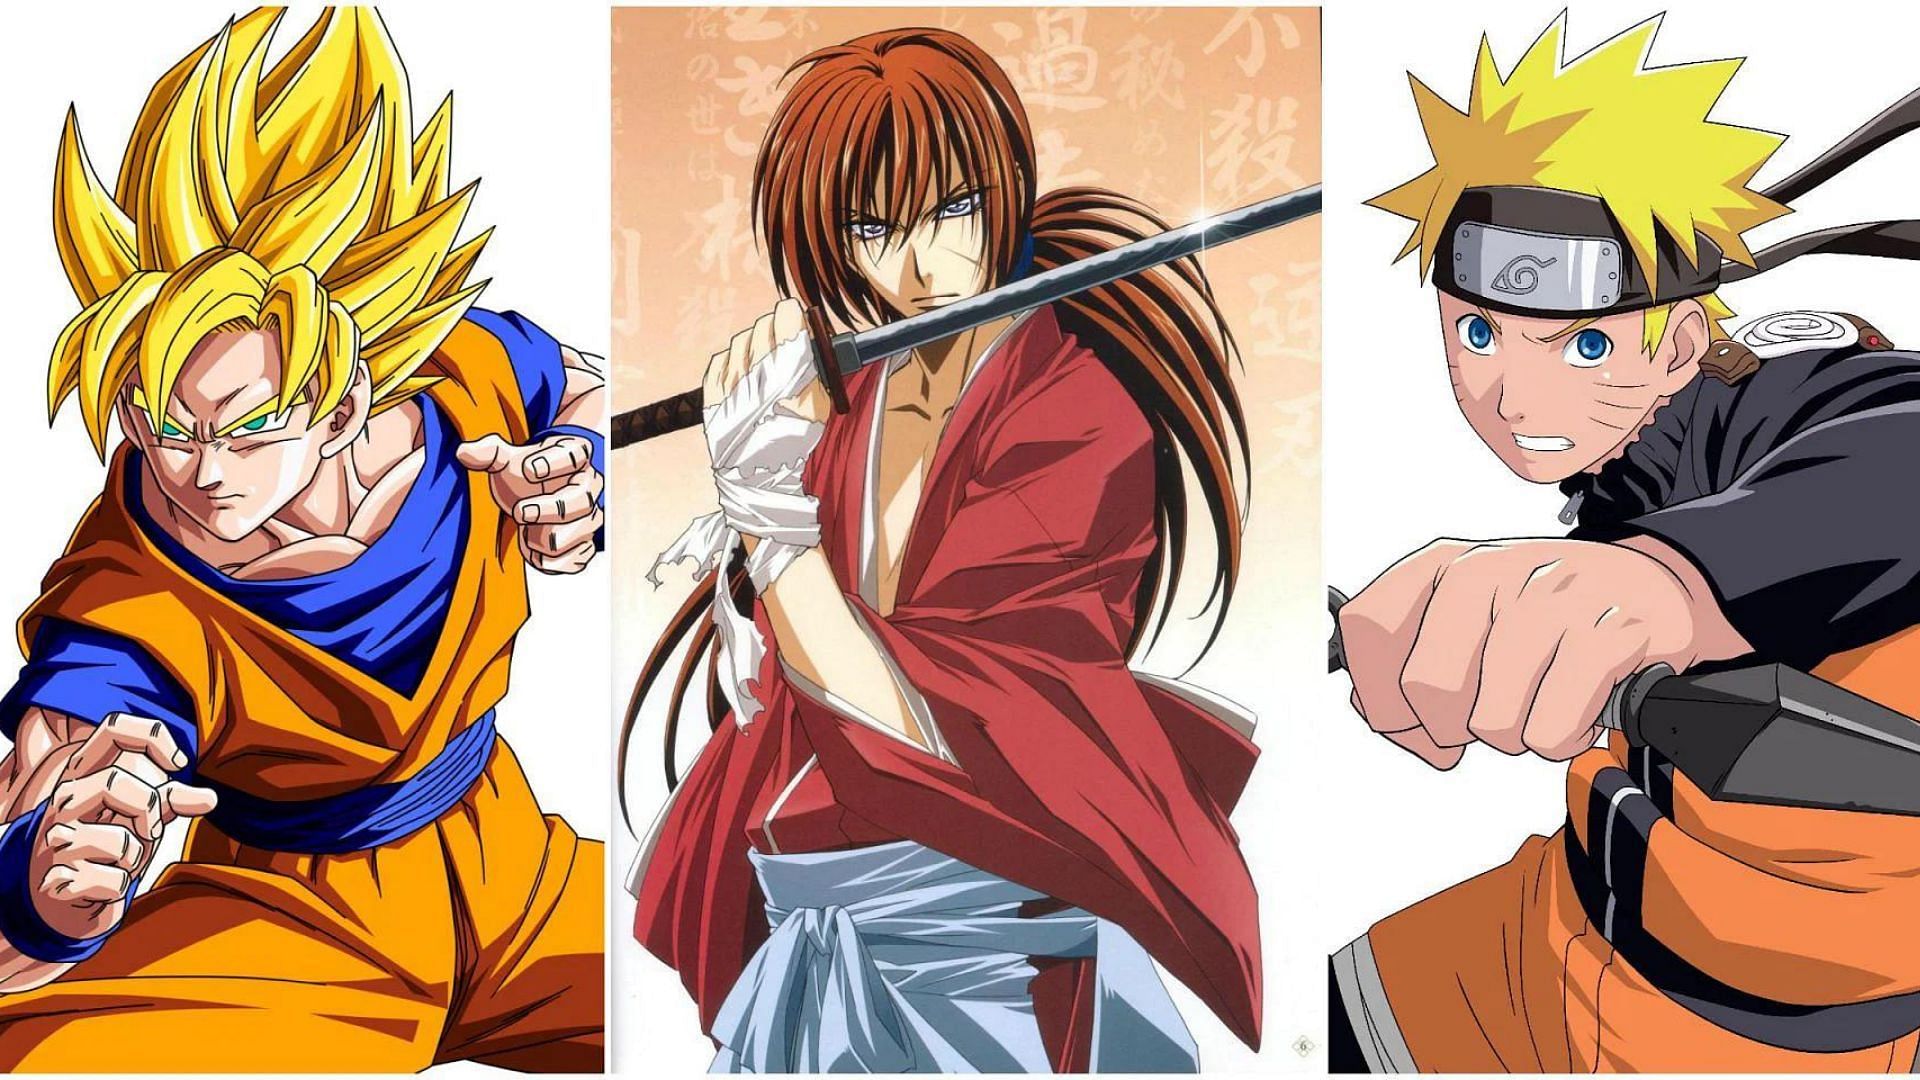 Fanmade collage of Goku, Naruto, and Kenshin (Image via Wordpress/IAMGODECE)